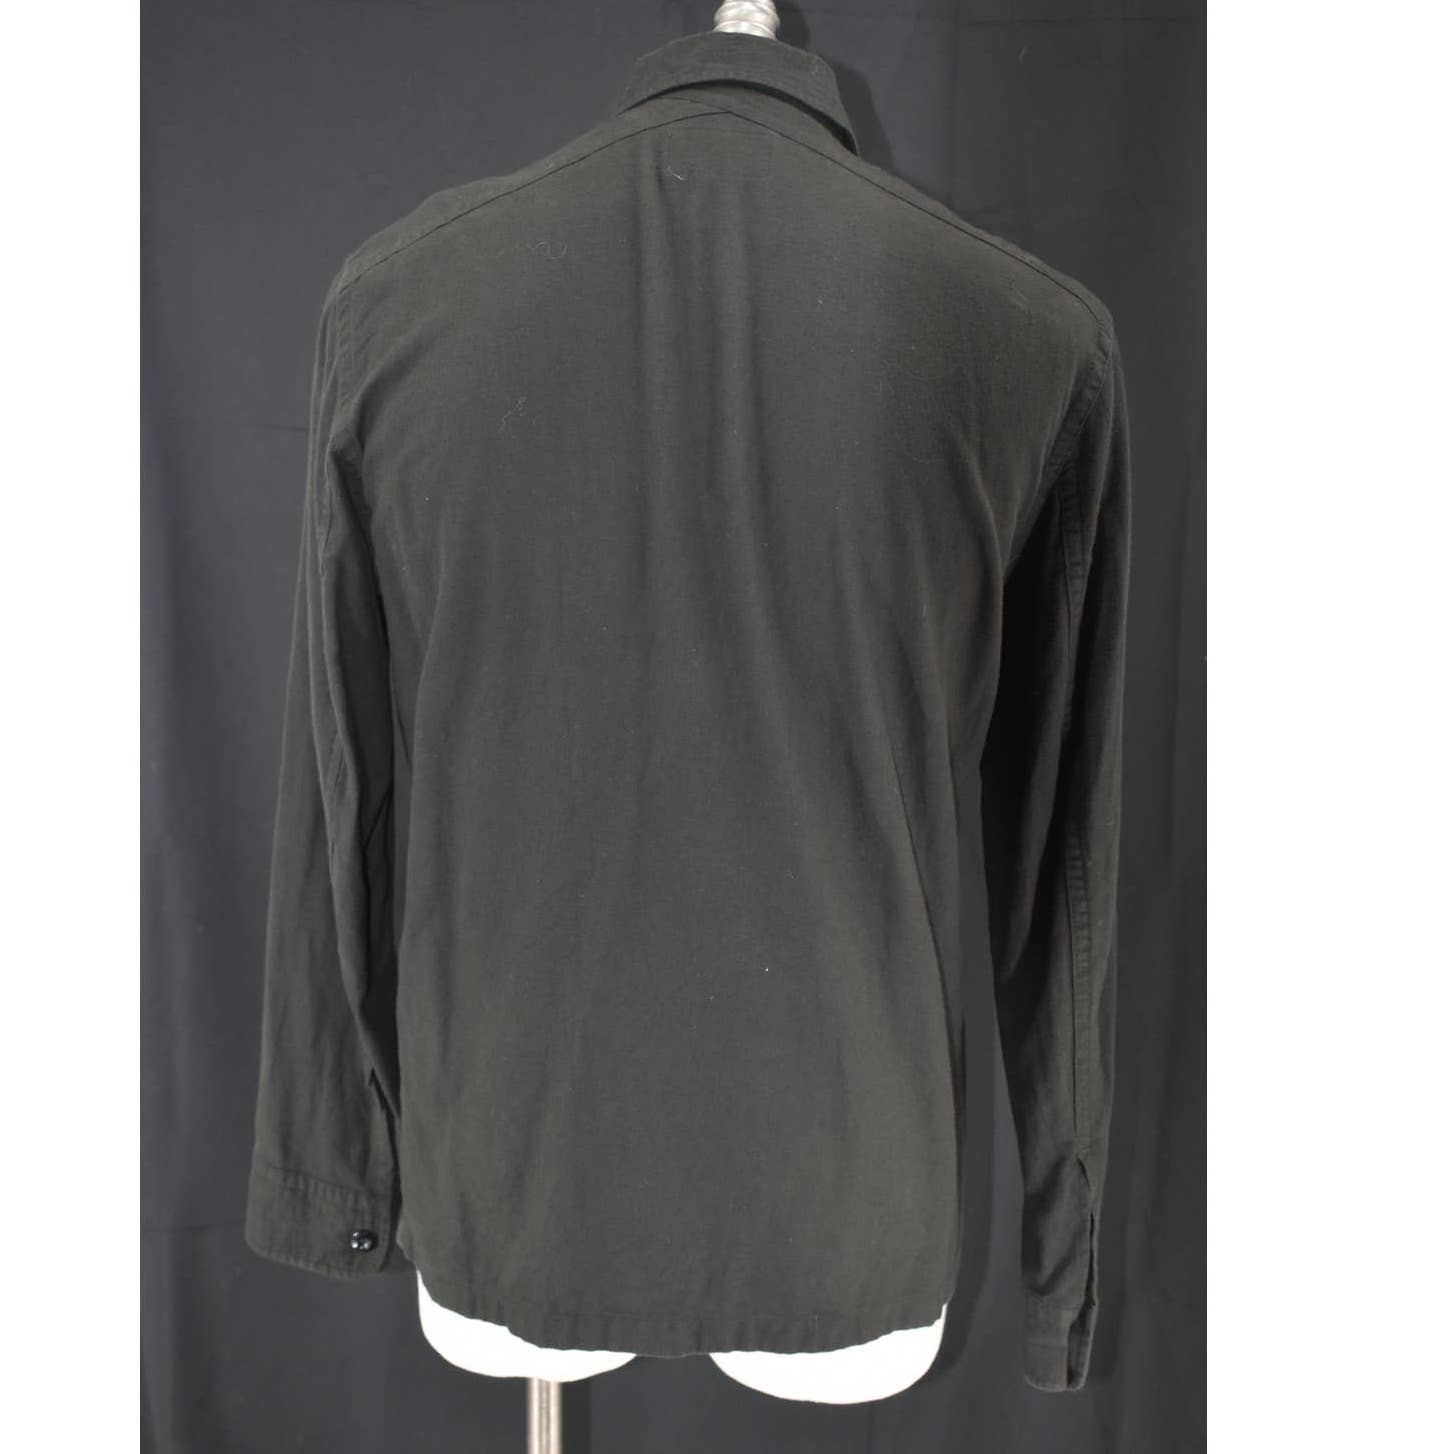 Sandro Paris Deep Green Button Up Flannel Shirt - XL